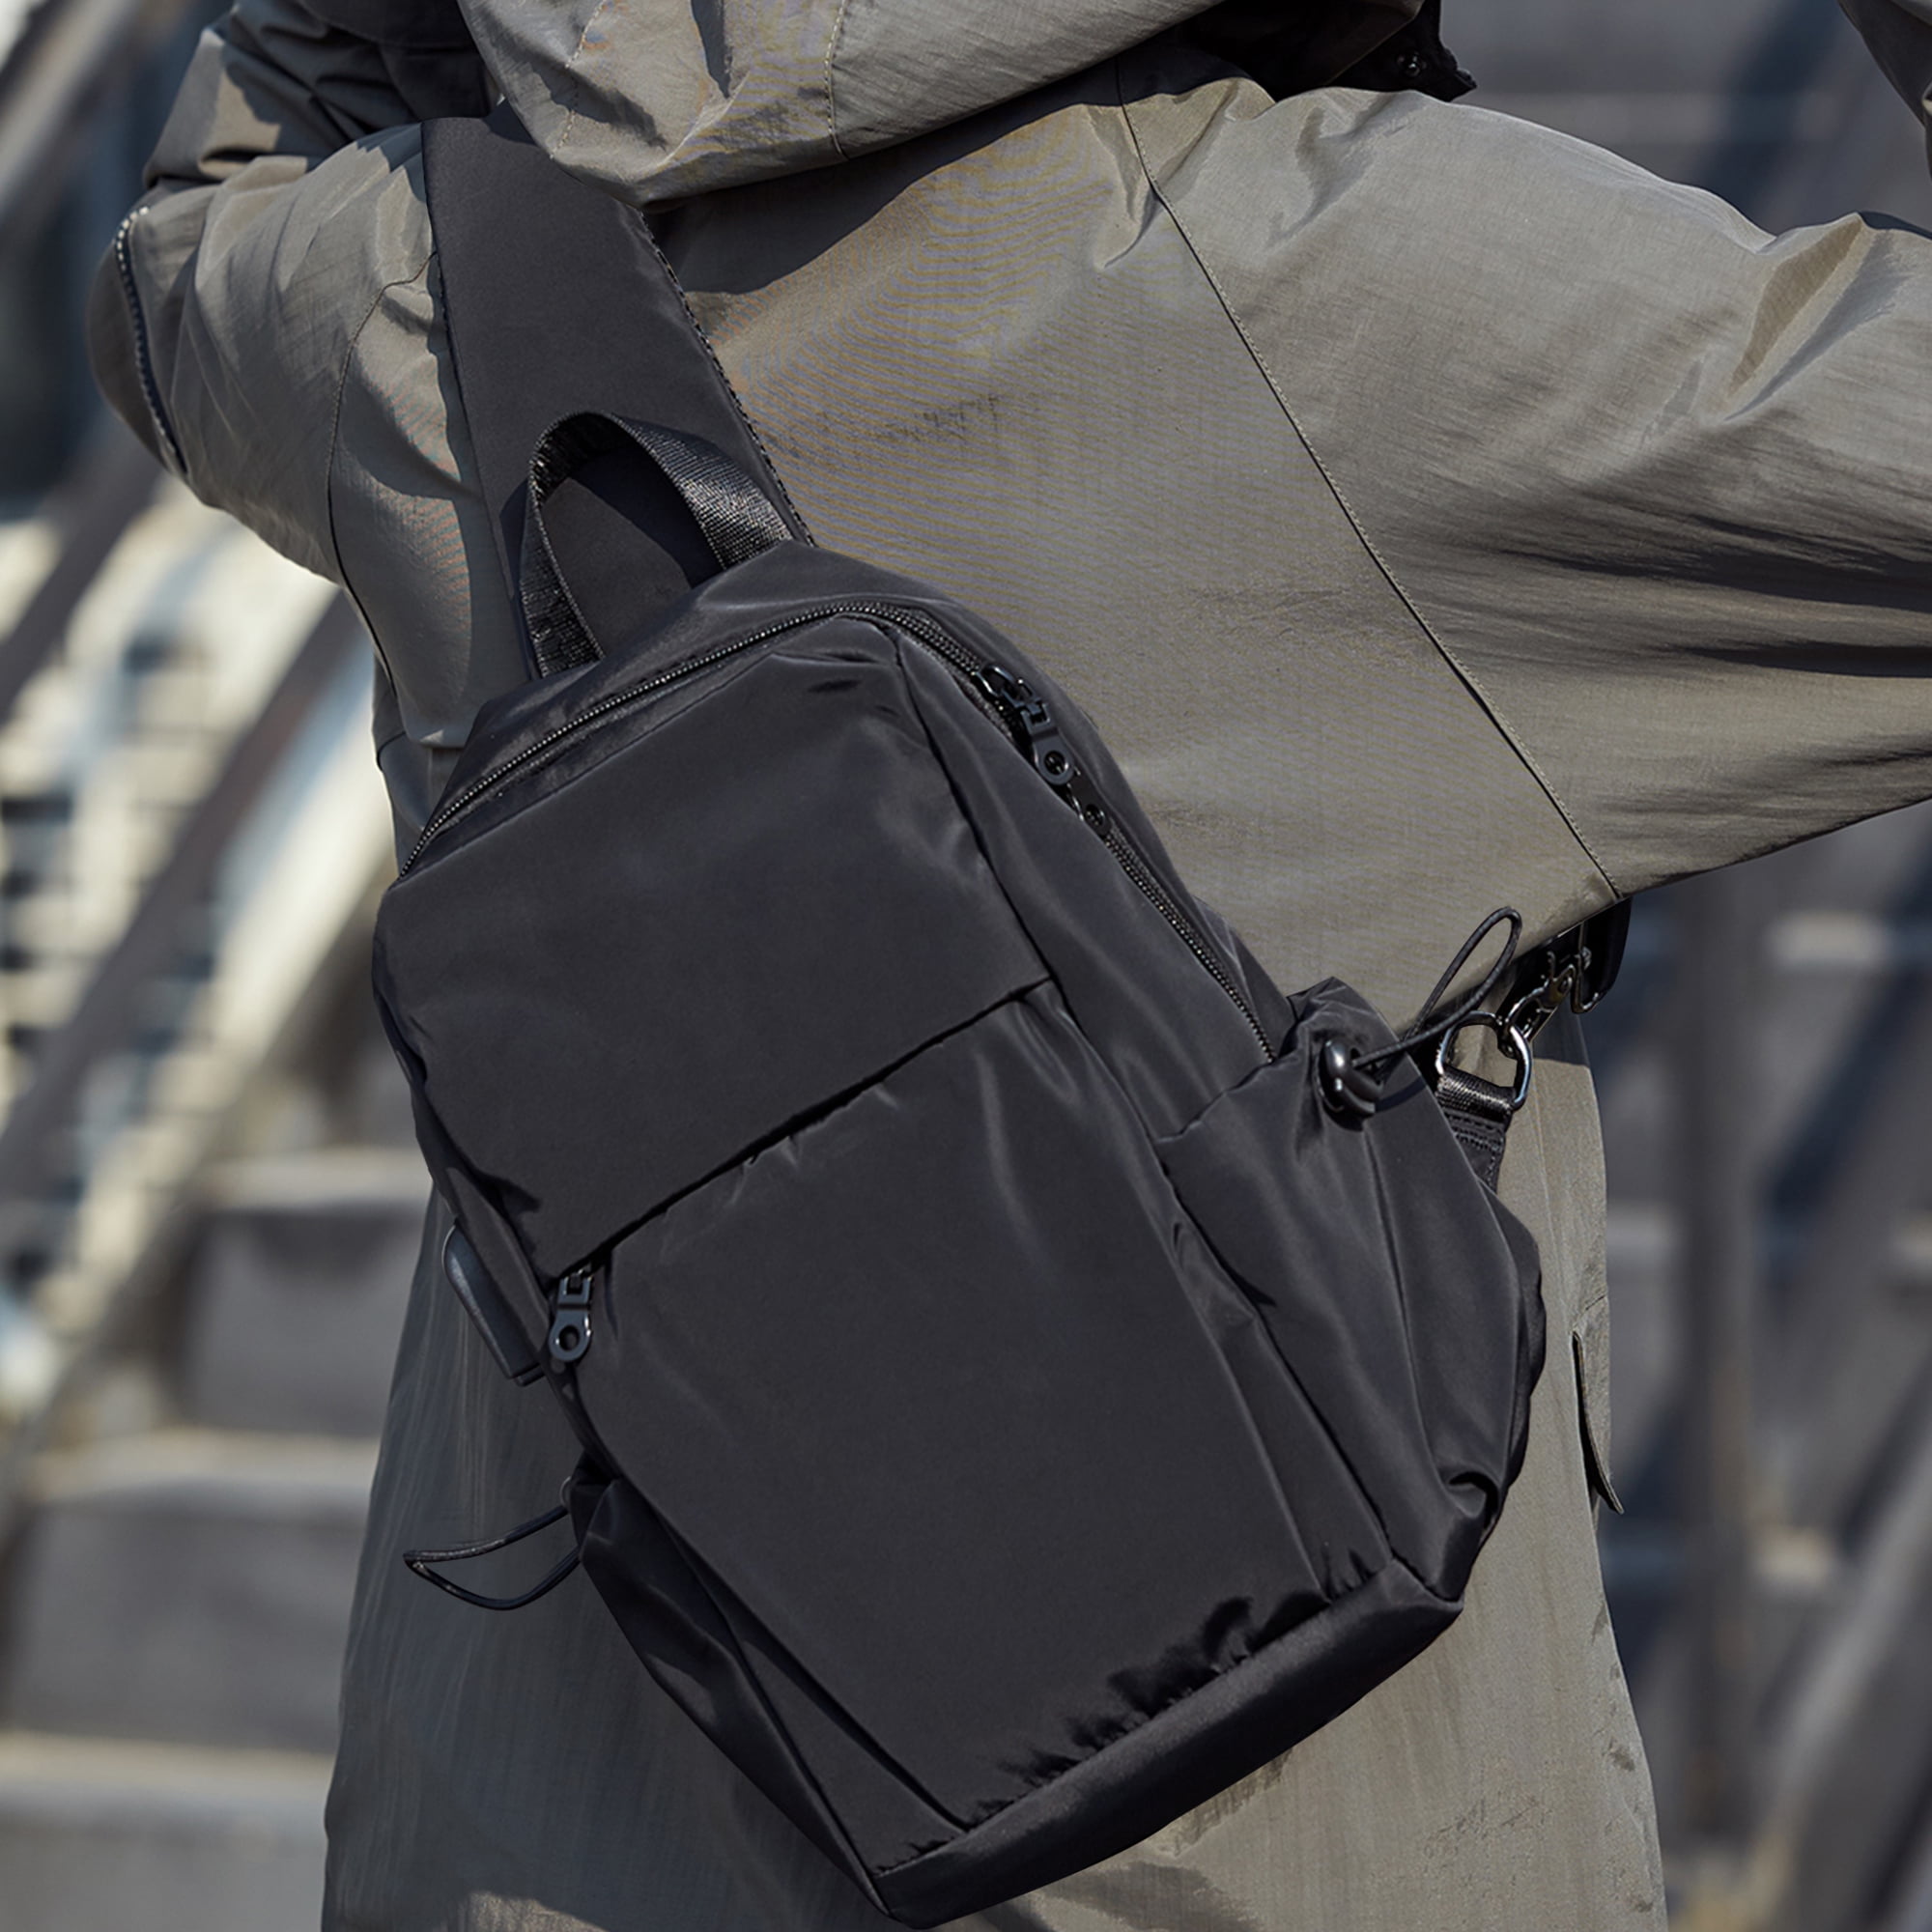 SYCNB Crossbody Backpack Sling Bag for Men Women, Black Messenger Shoulder Bag for School Work Travel, Adult Unisex, Size: Large